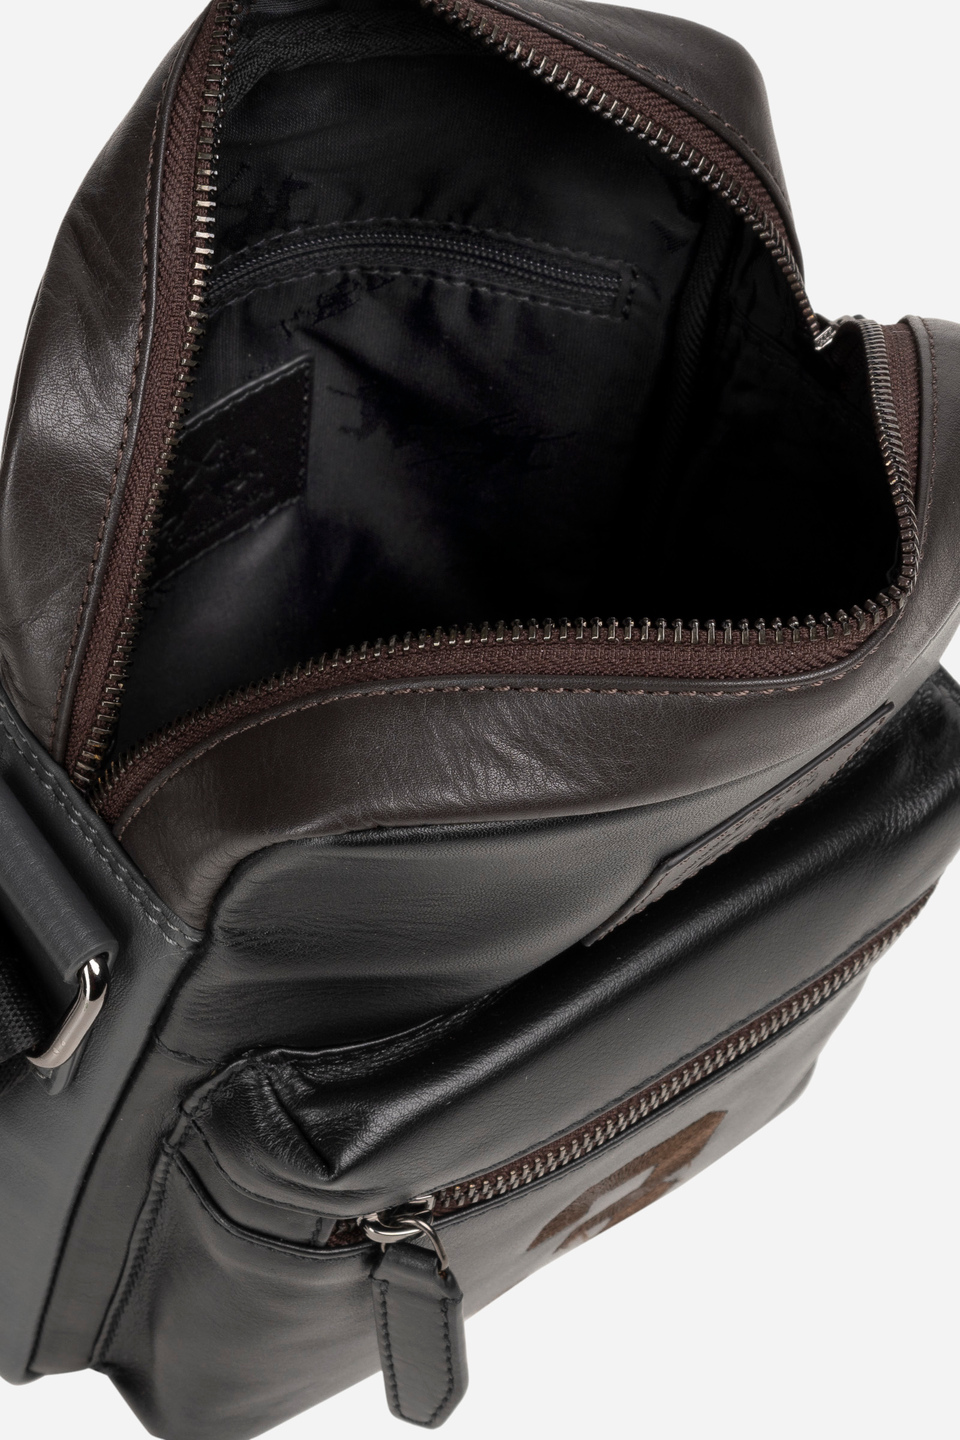 Bodybag aus Leder mit Schulterriemen aus Polyesterband | La Martina - Official Online Shop